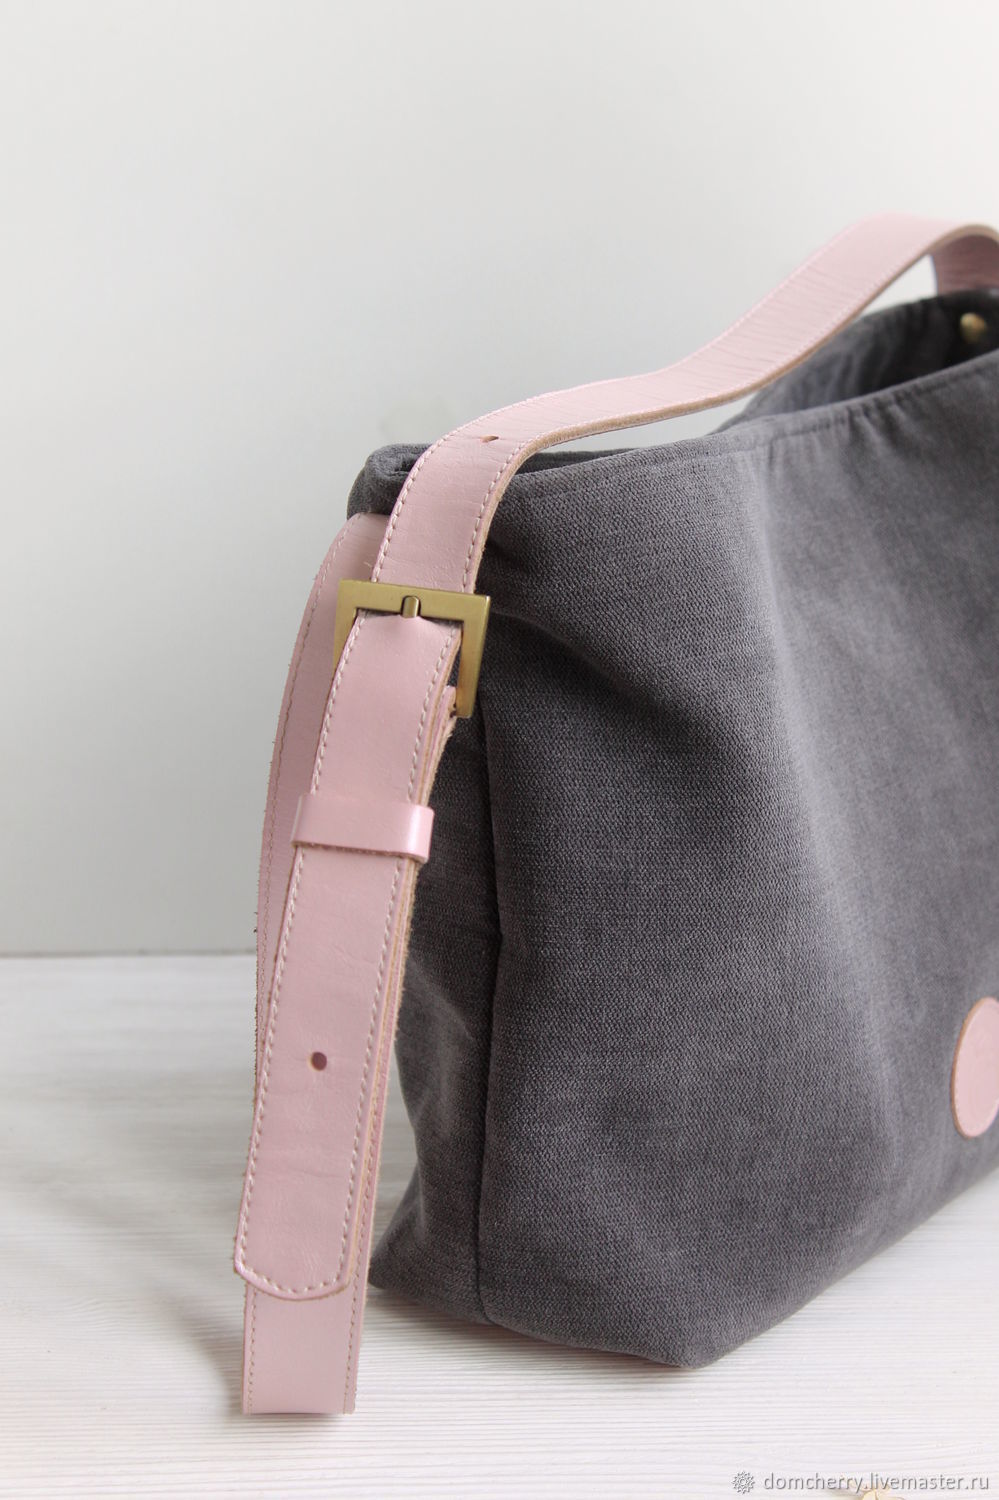 Статья о маленькой сумочке из ткани: милый акцент для стильного образа